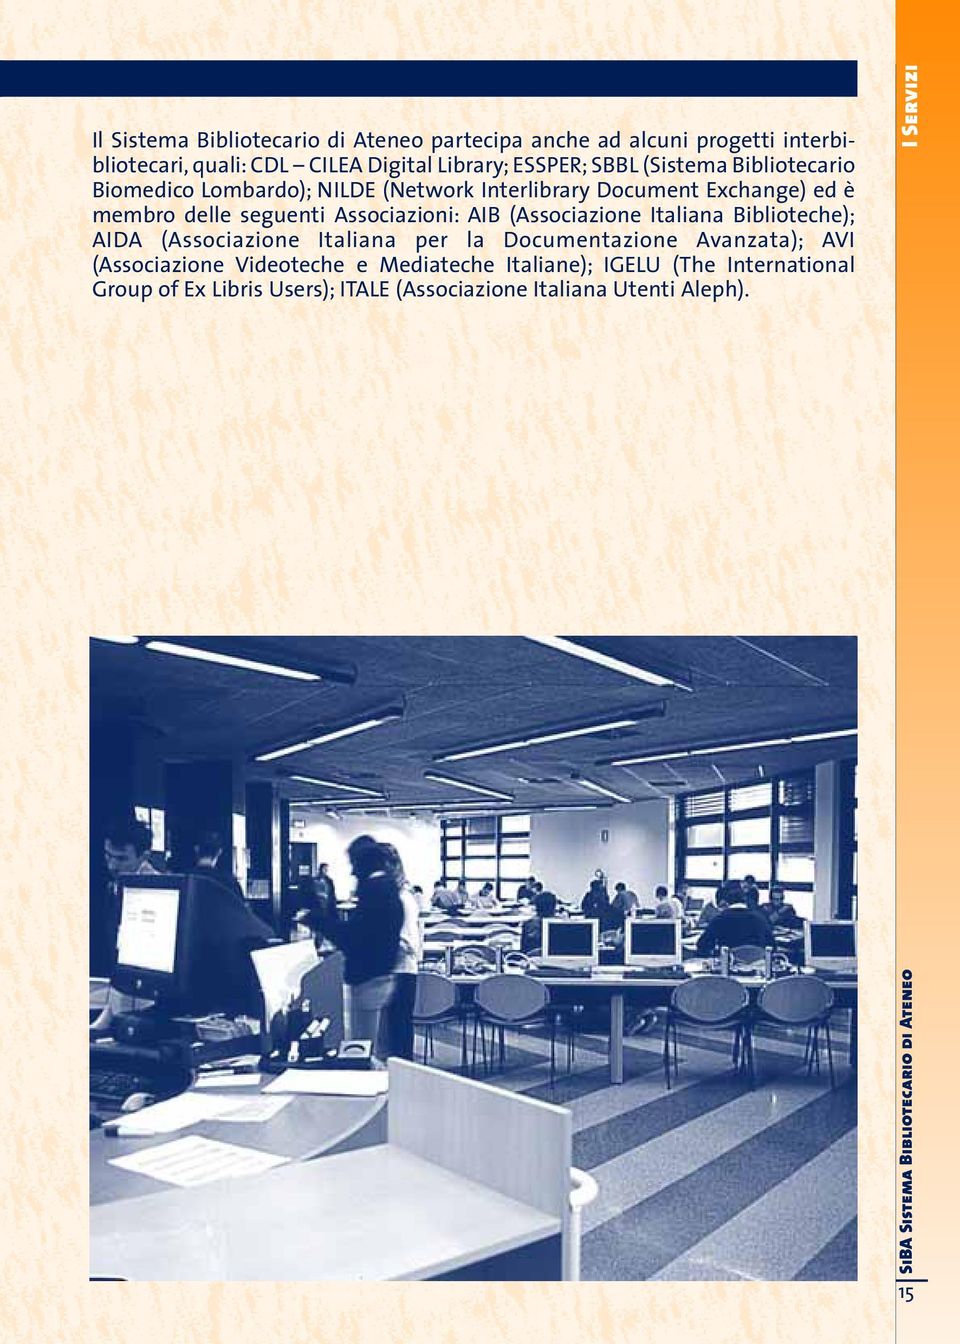 (Associazione Italiana Biblioteche); AIDA (Associazione Italiana per la Documentazione Avanzata); AVI (Associazione Videoteche e Mediateche